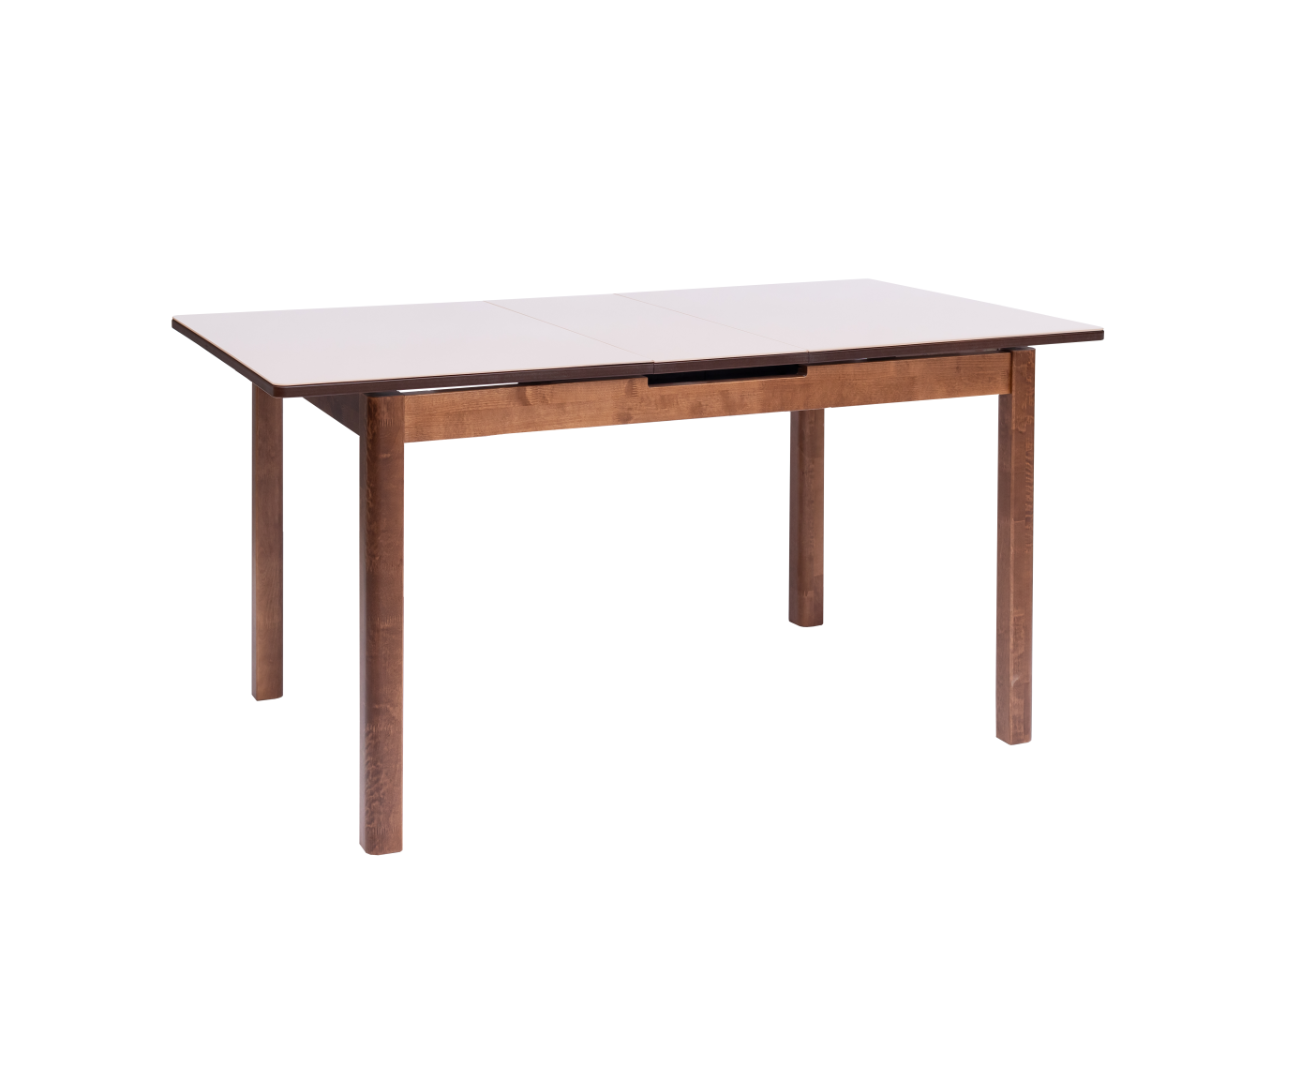 Оби стол. Стол Антила Plus 120x75 см. Оби стол кухонный. Obi стол для кухни. Daiwa casa стол Антила 78х78.